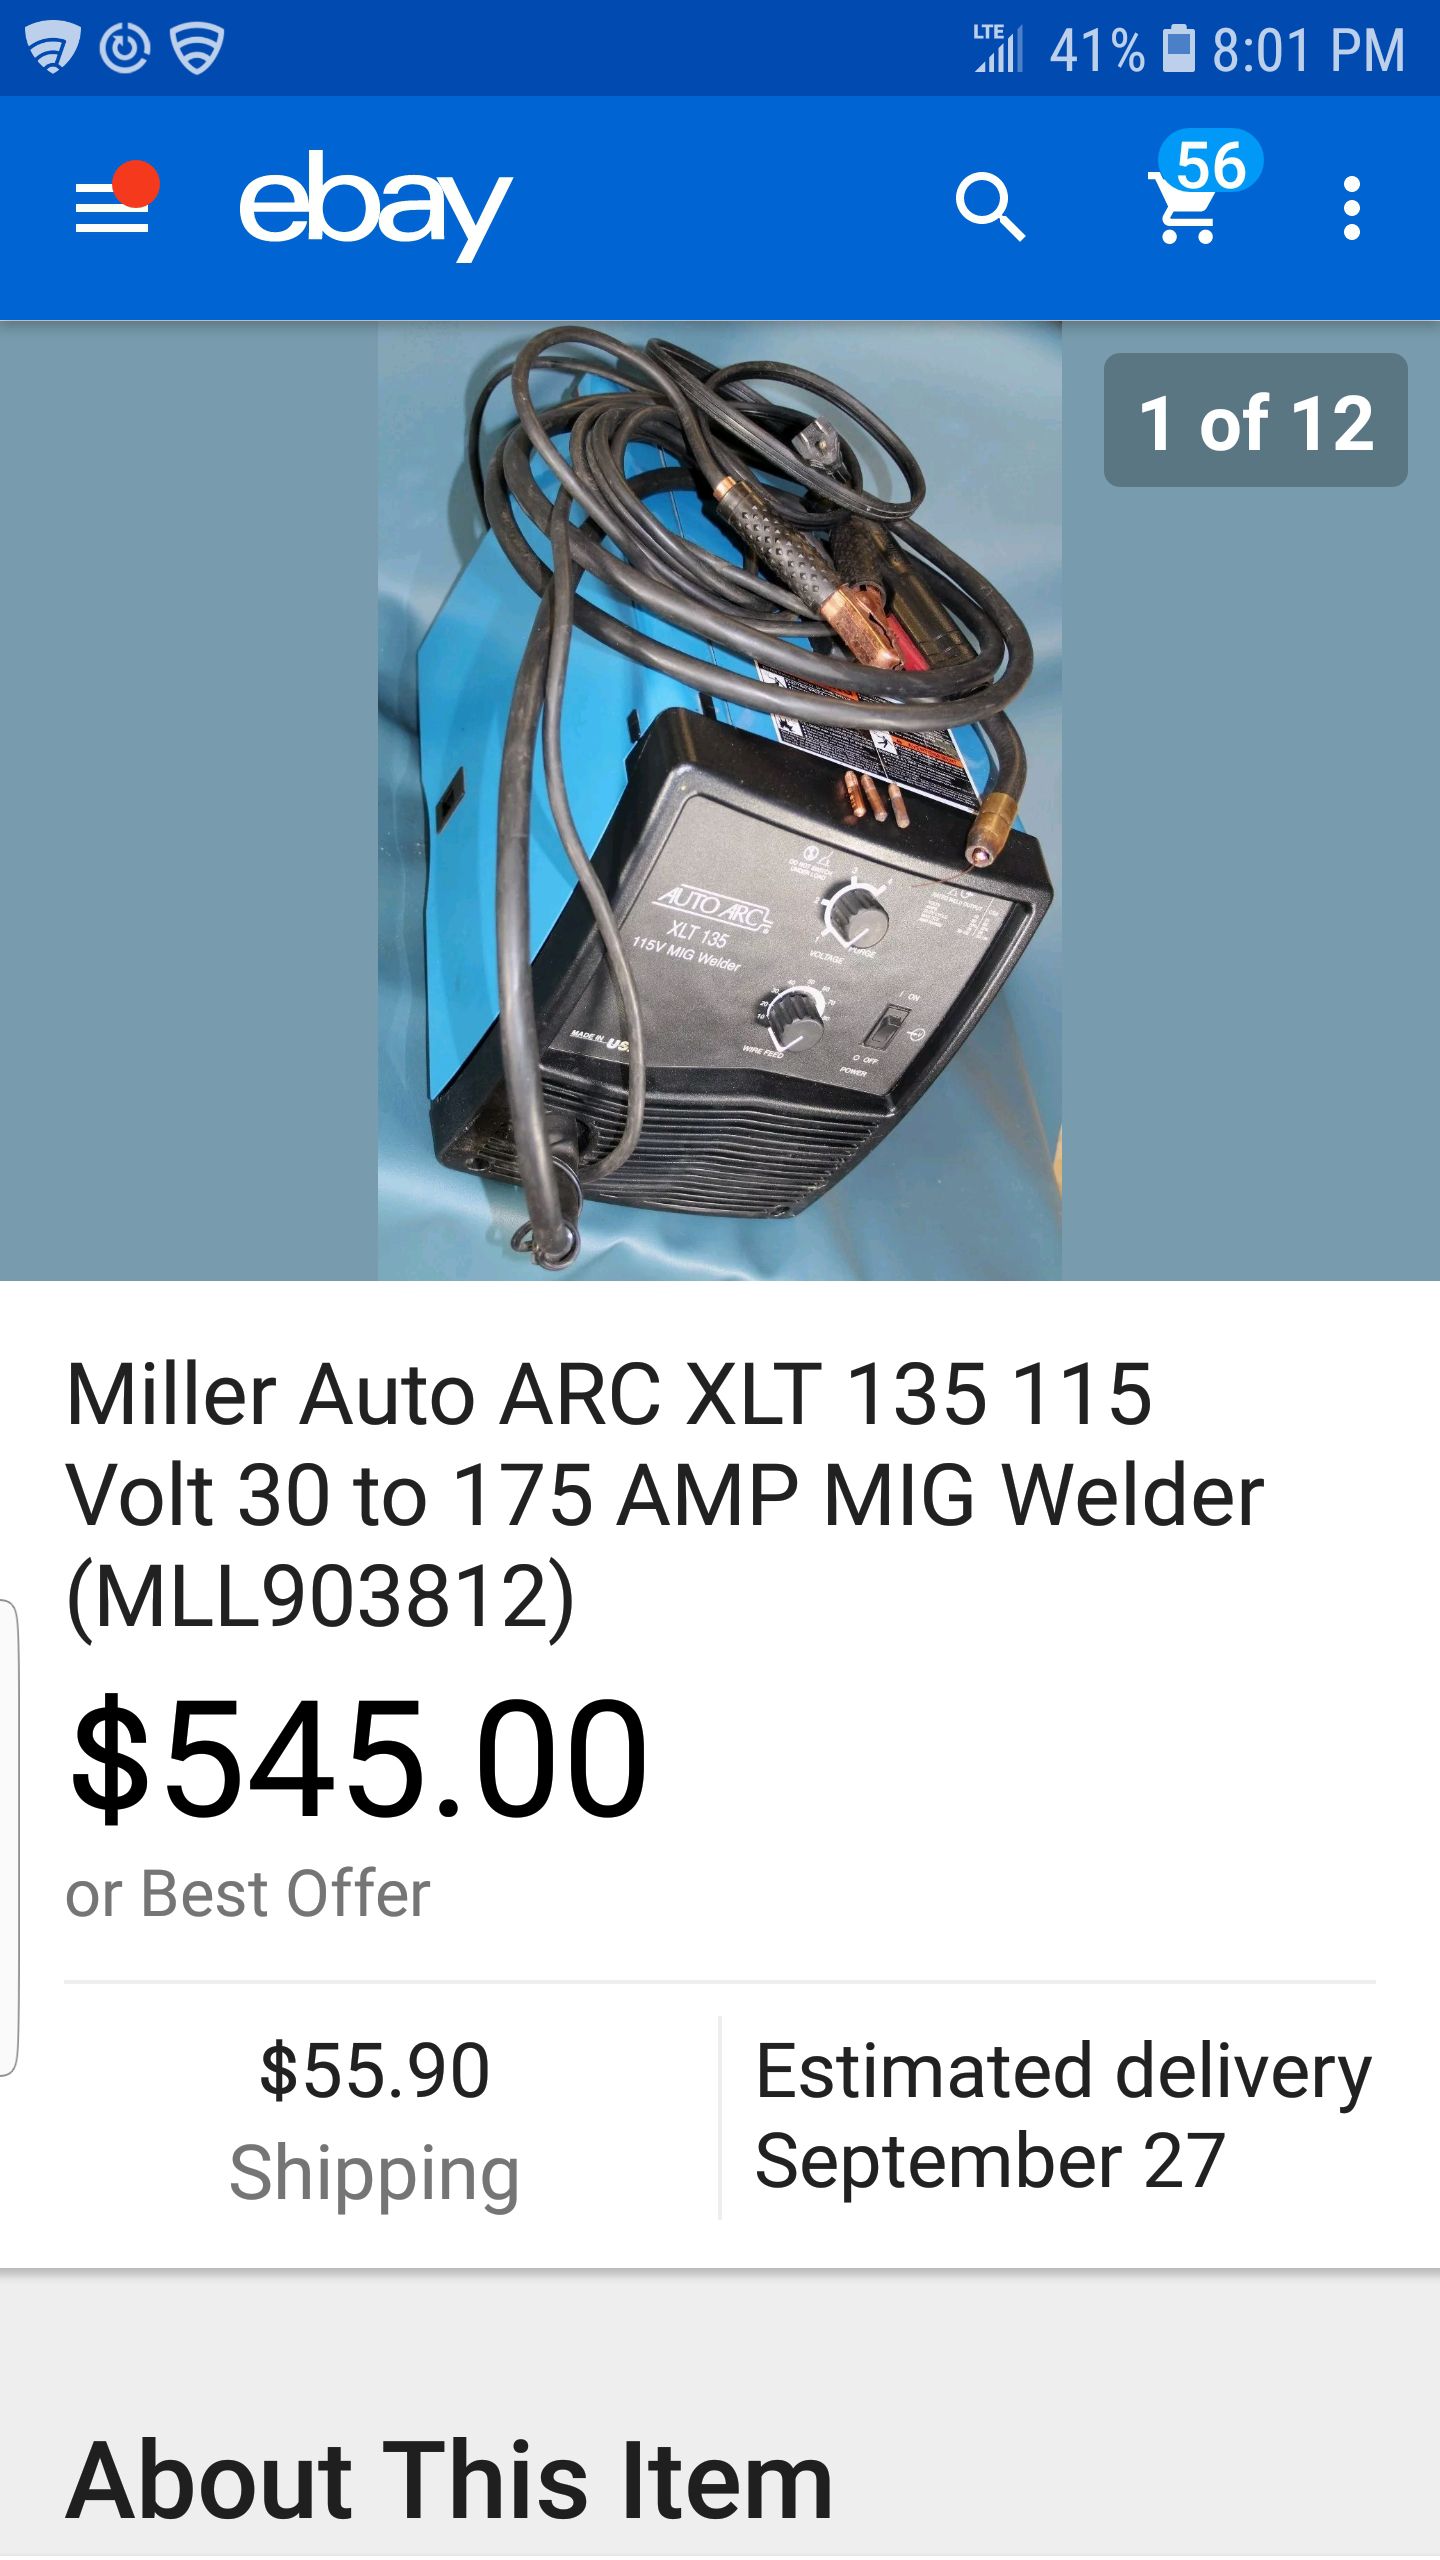 Miller Mig Welder complete